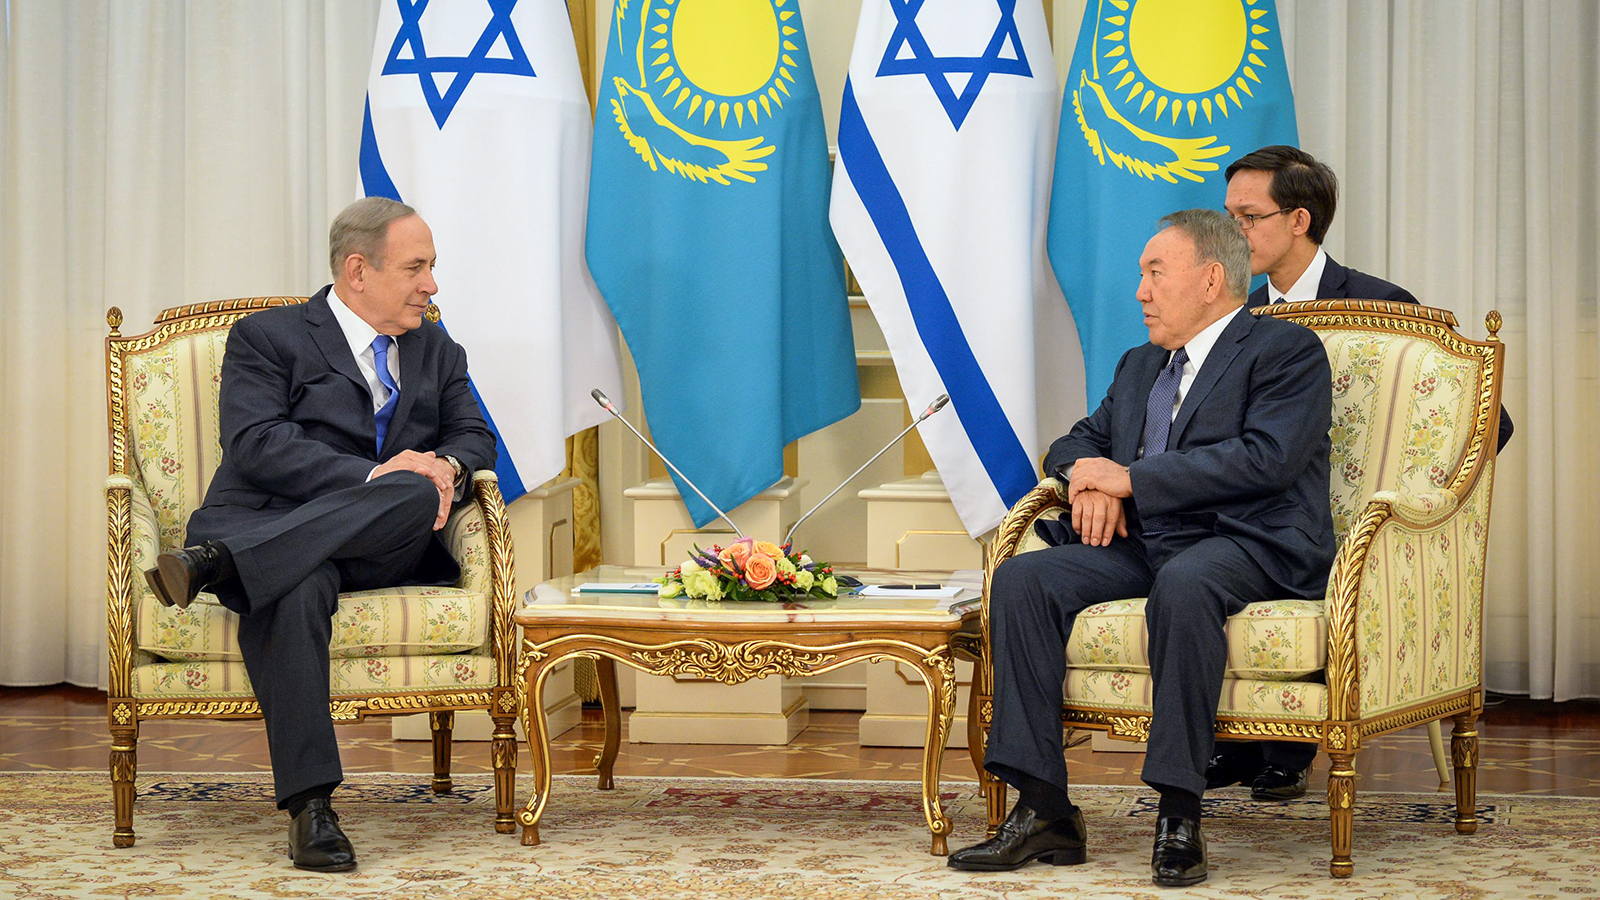 בנימין נתניהו נפגש עם נשיא קזחסטן (צילום: חיים צח / לע"מ).